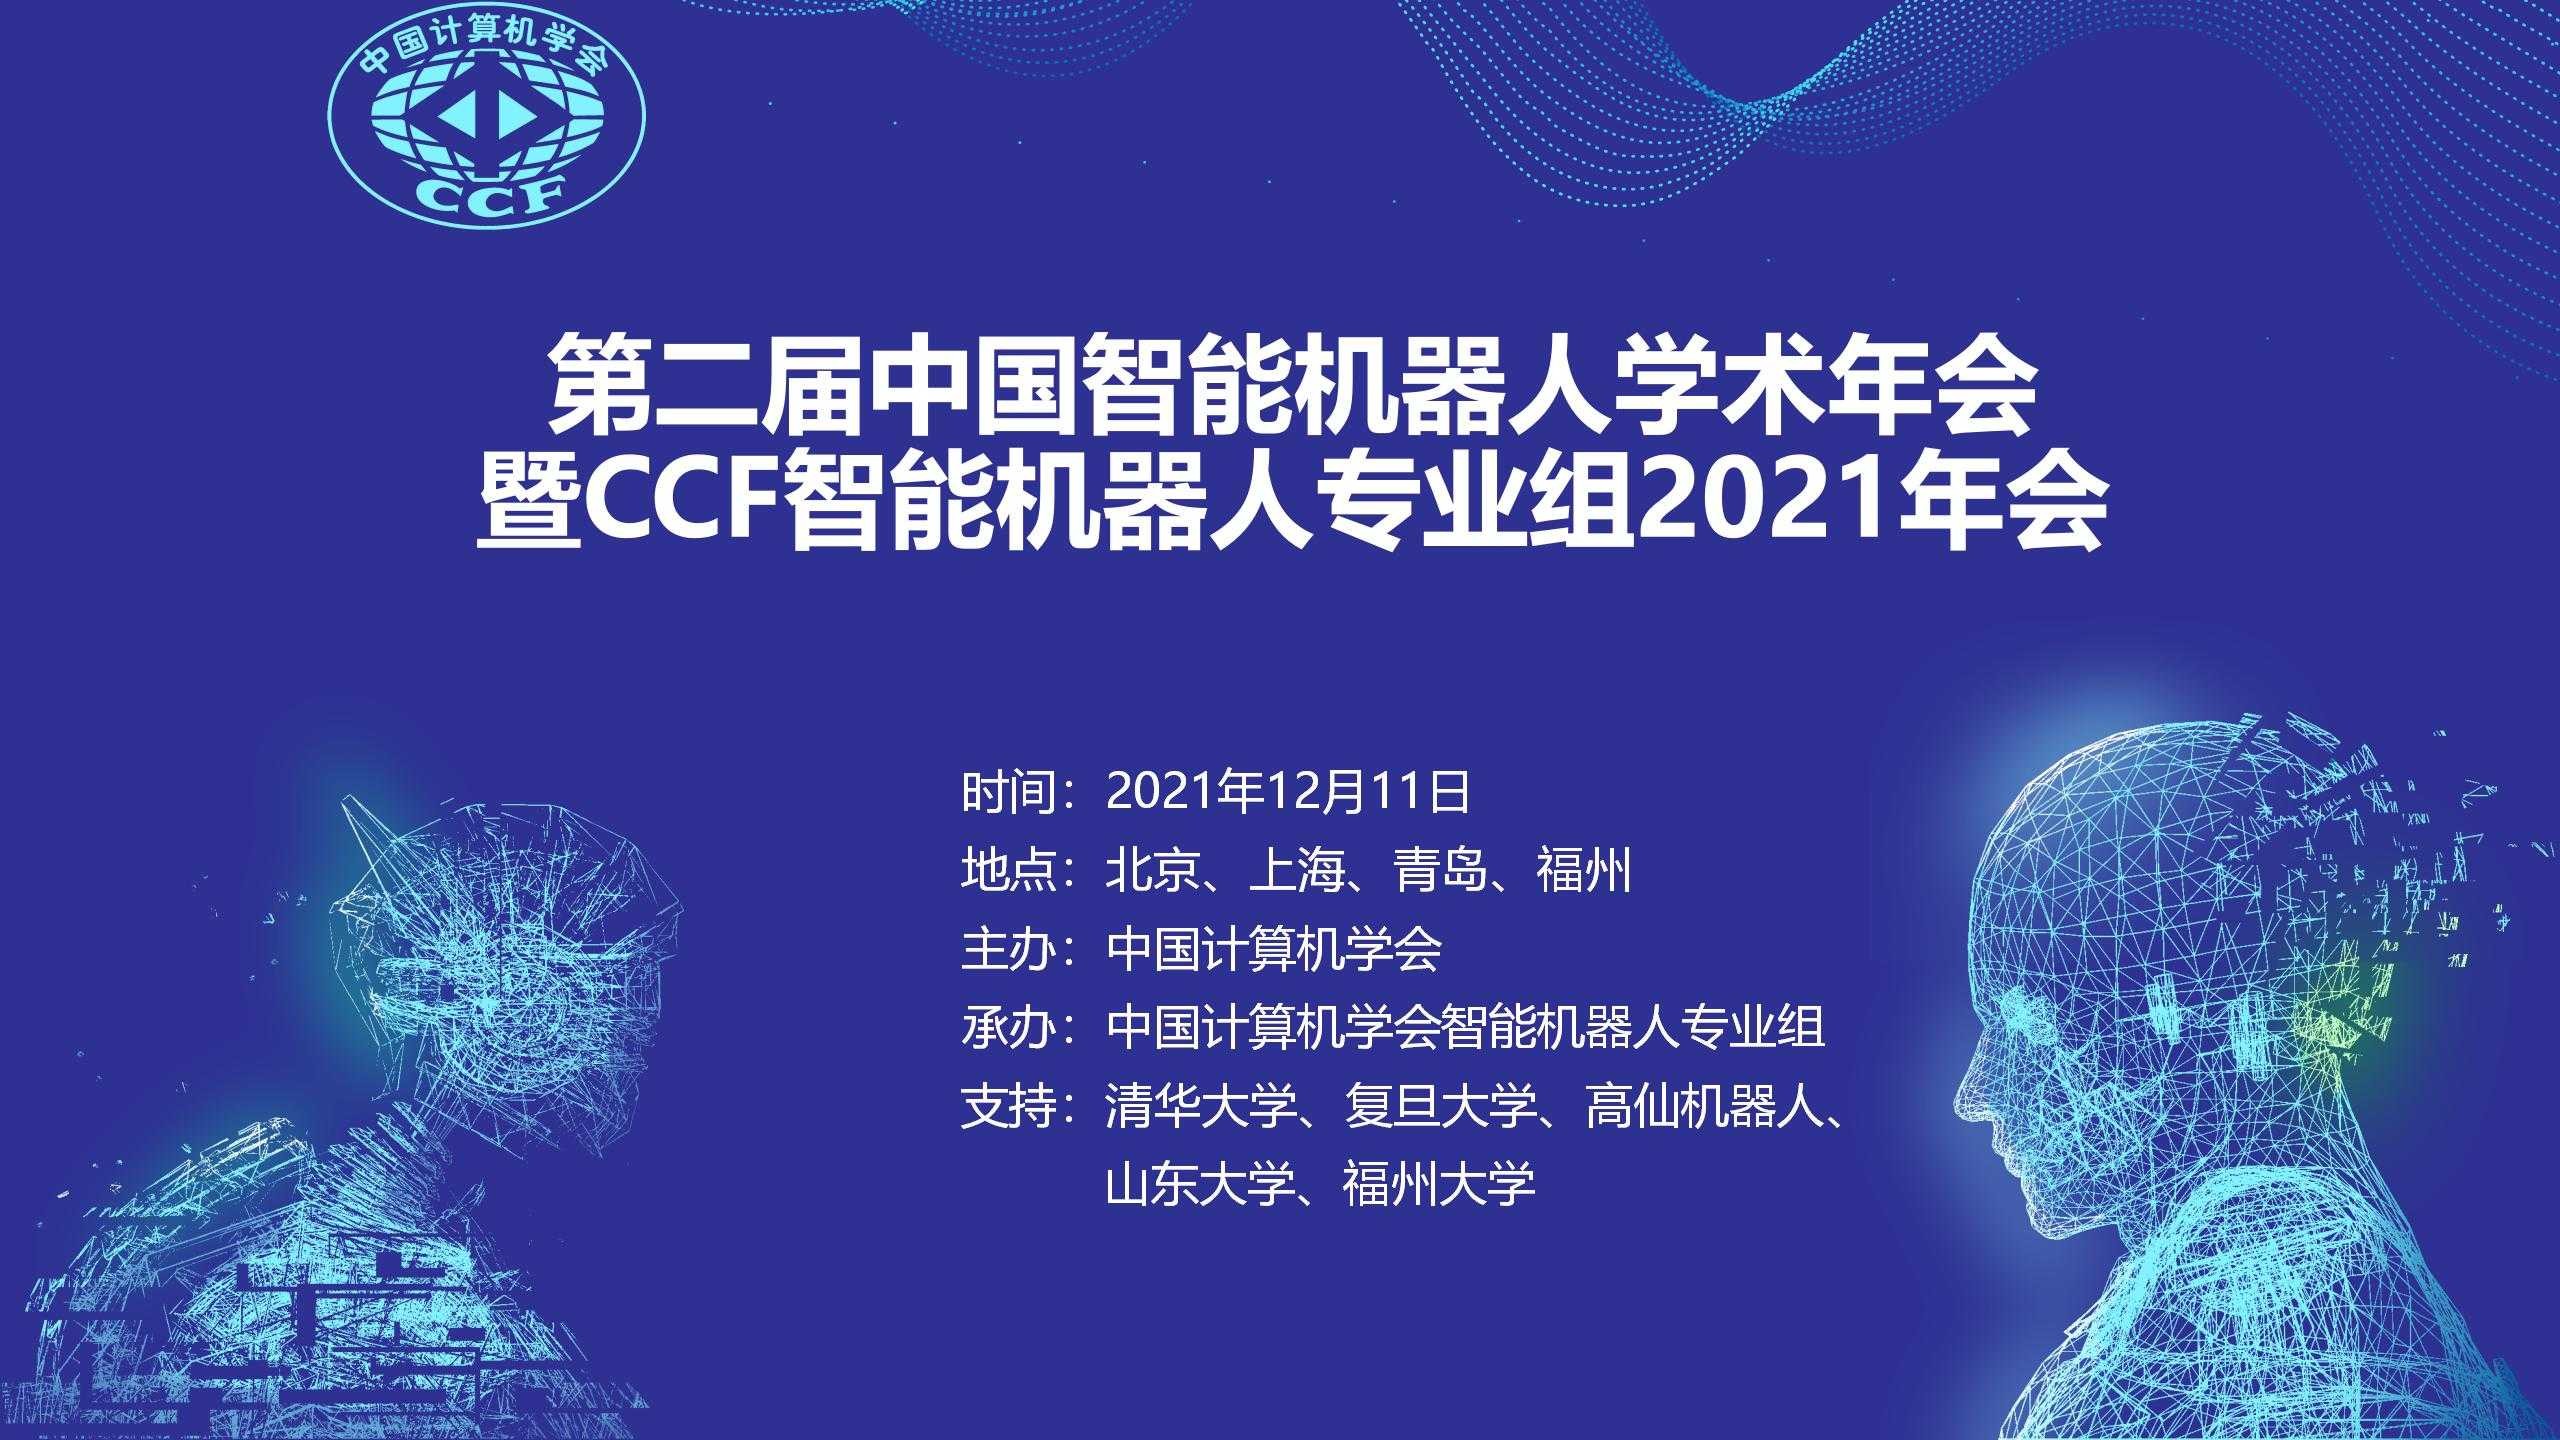 大佬云集丨高仙邀您参加中国智能机器人学术年会